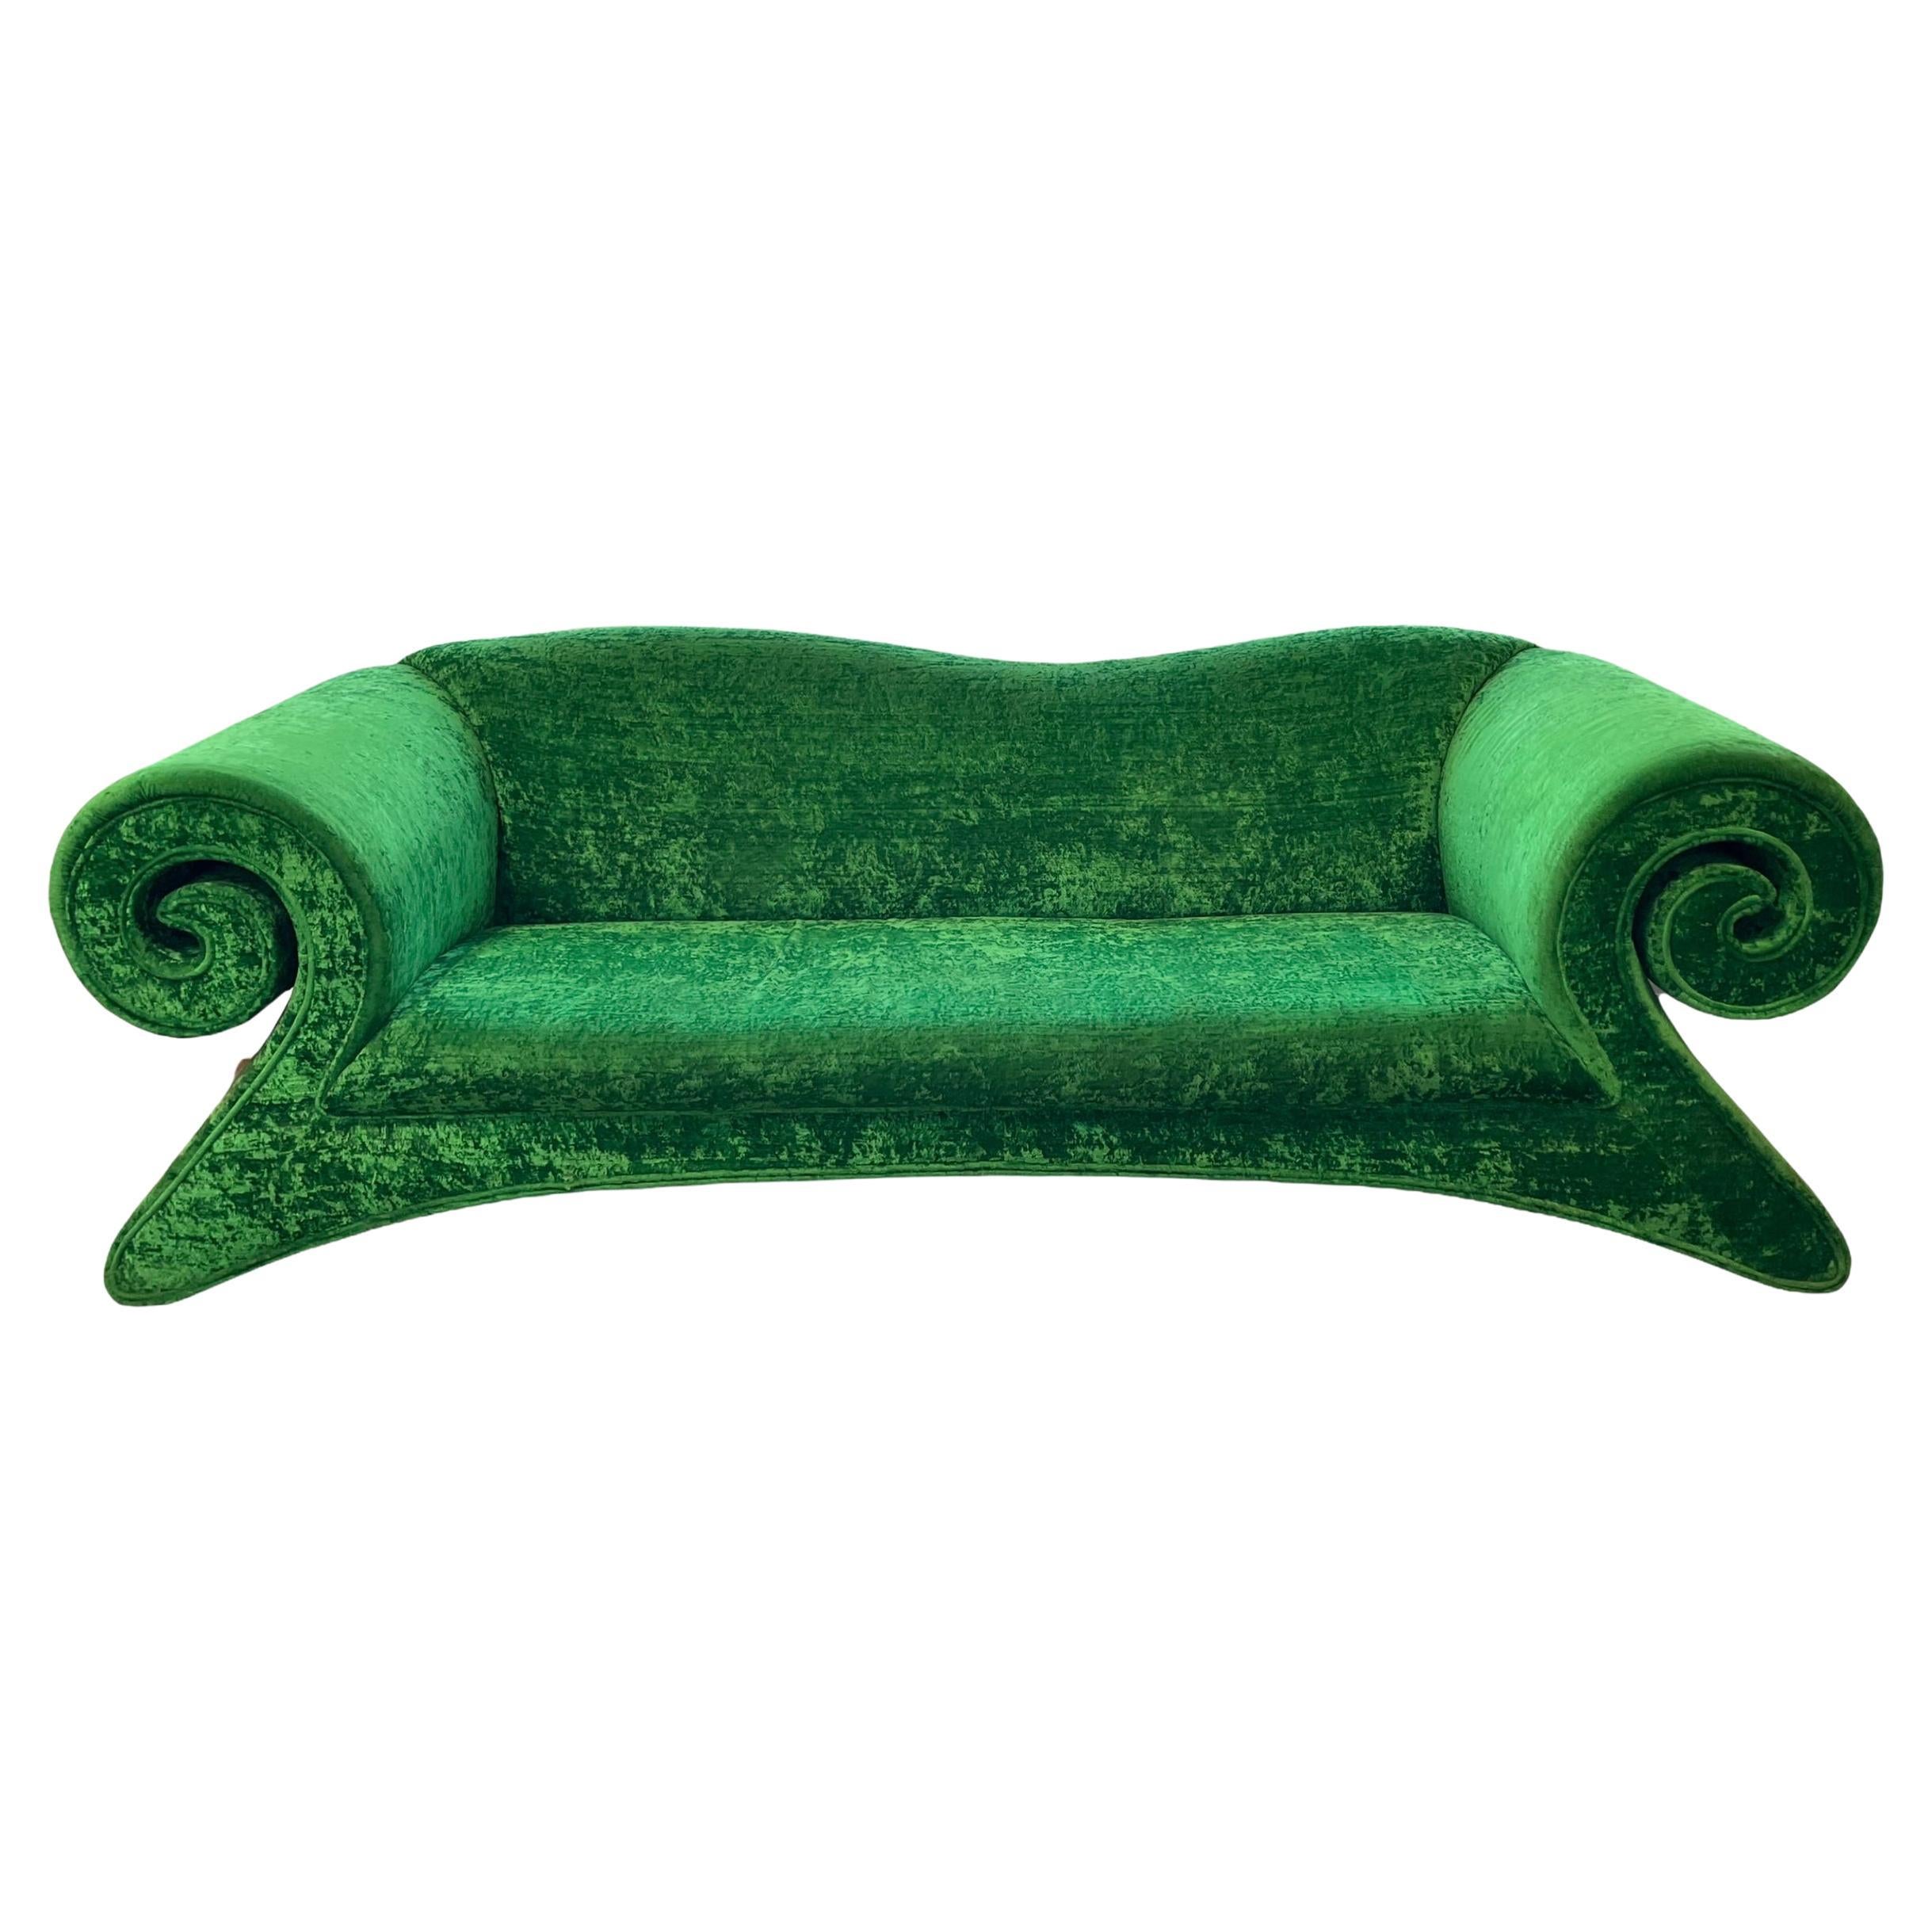 Bretz Green Crushed Velvet “Mammut” Sofa For Sale